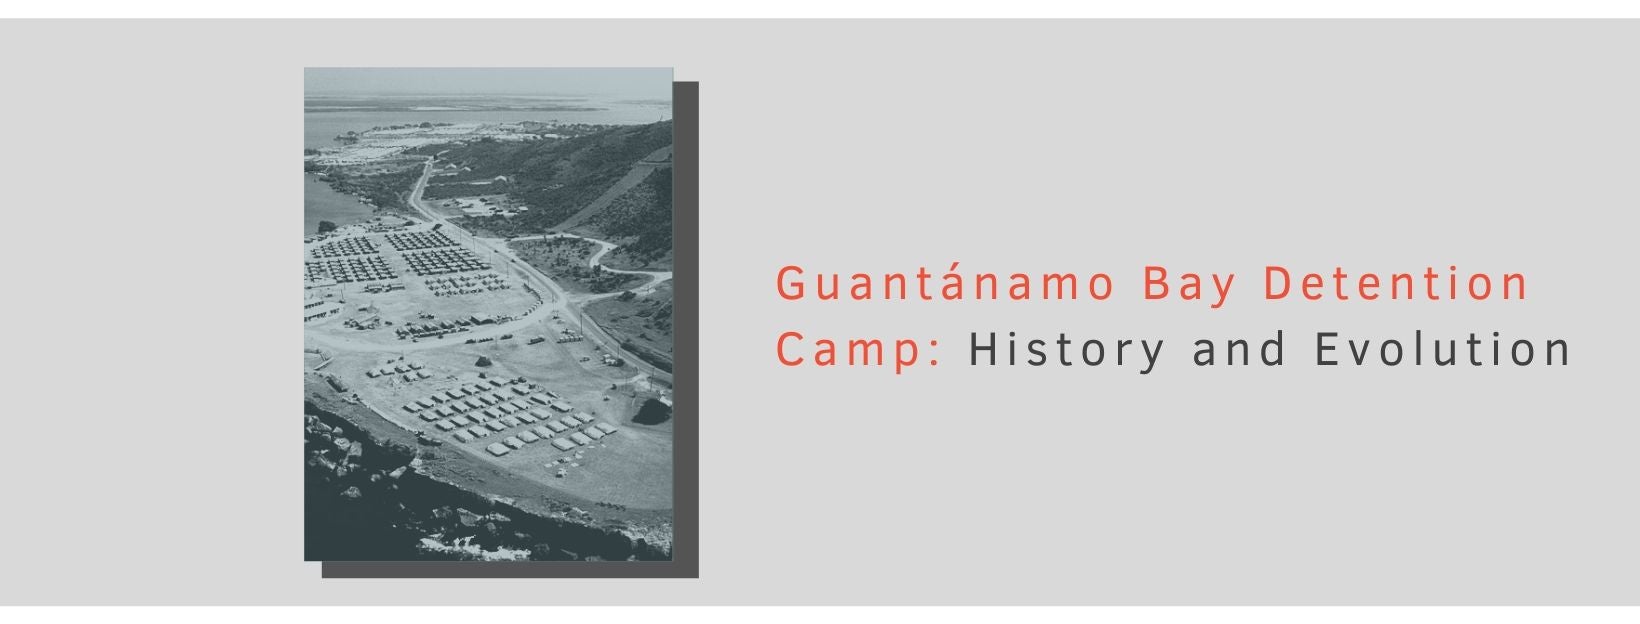 Bird's eye view of Guantanamo Bay